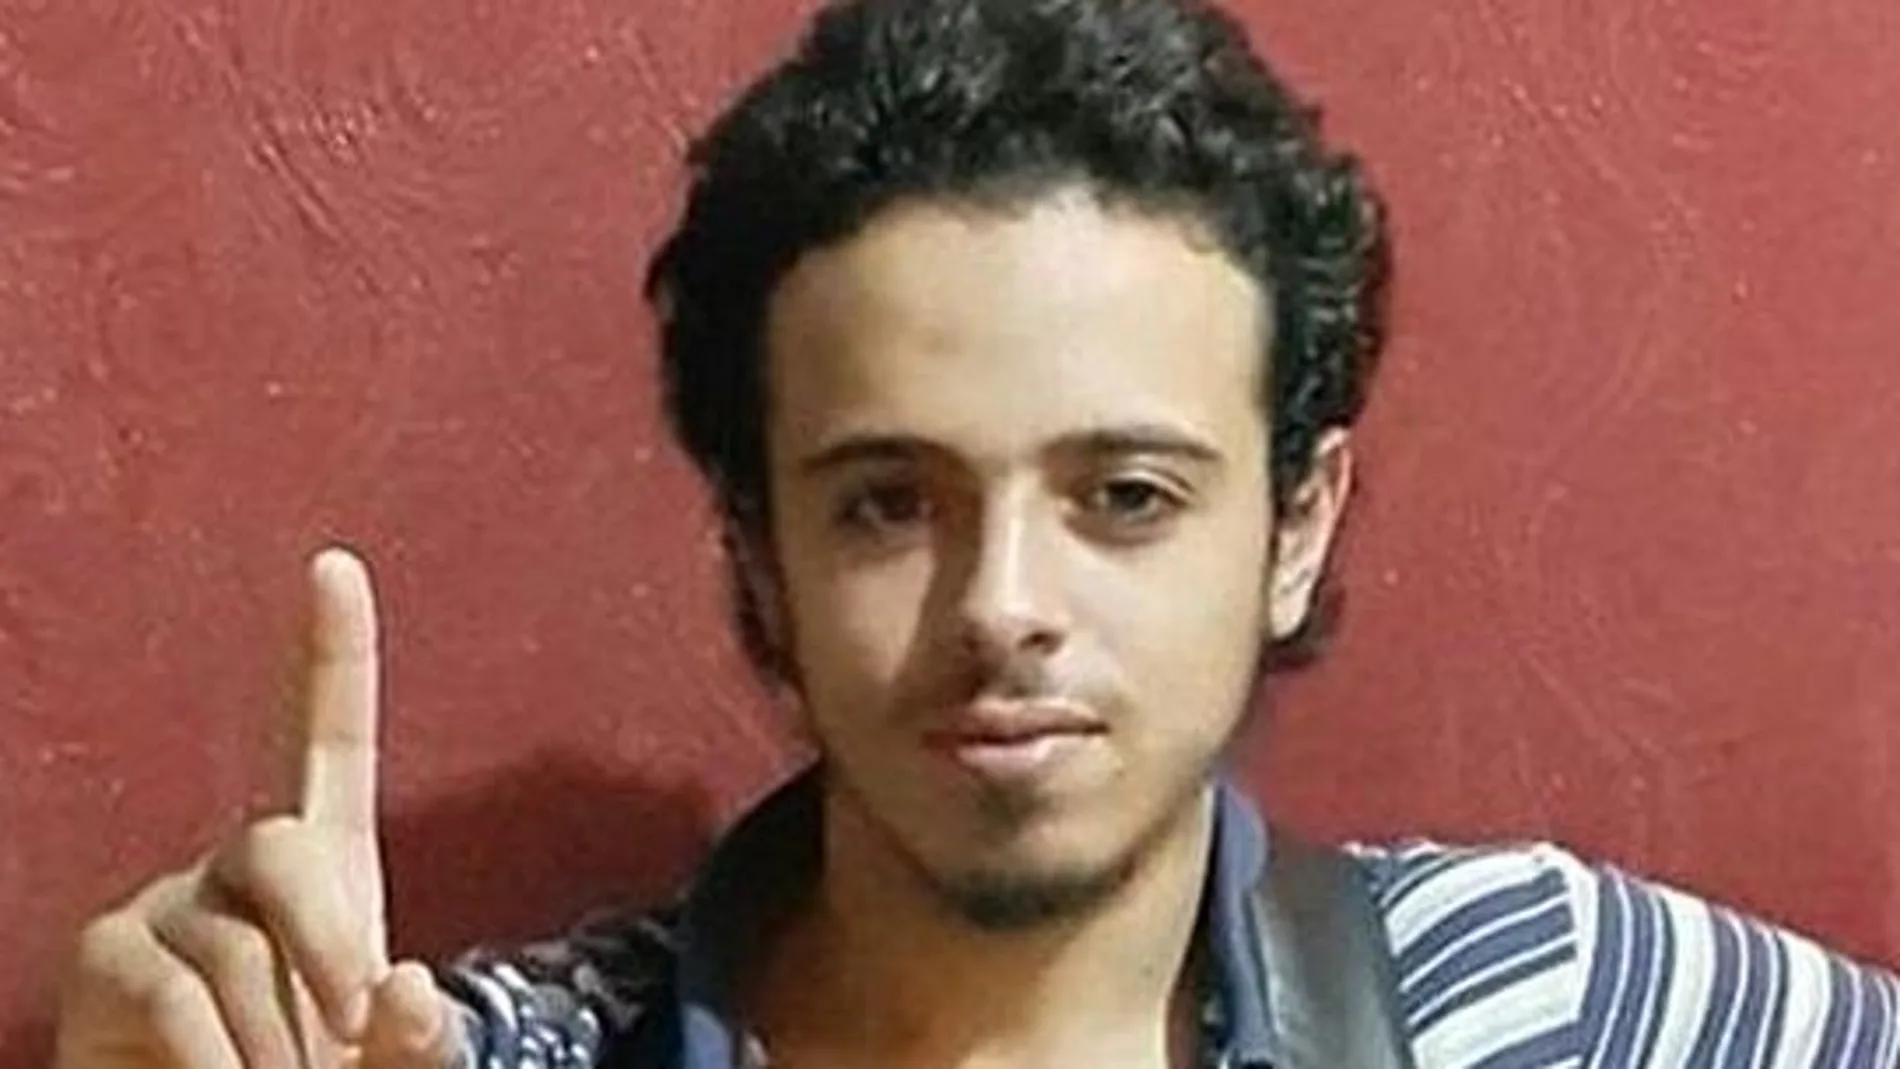 Bilal Hadfi, uno de los suicidas del Estadio de Francia